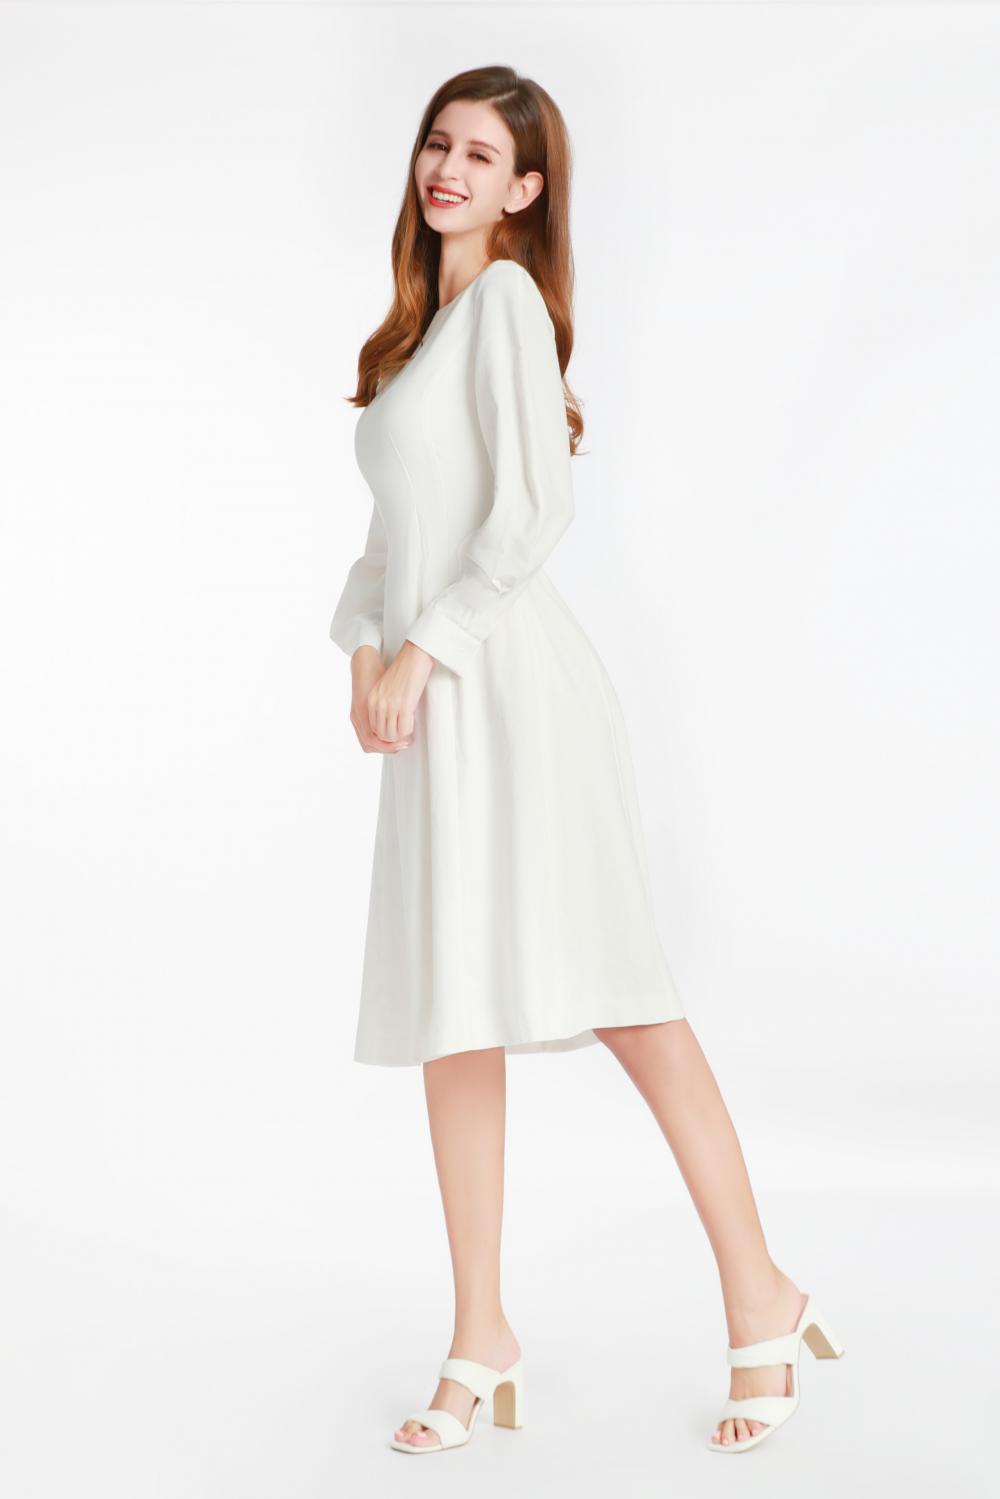 Witte jurk met lange mouwen met een kleine ronde kraag